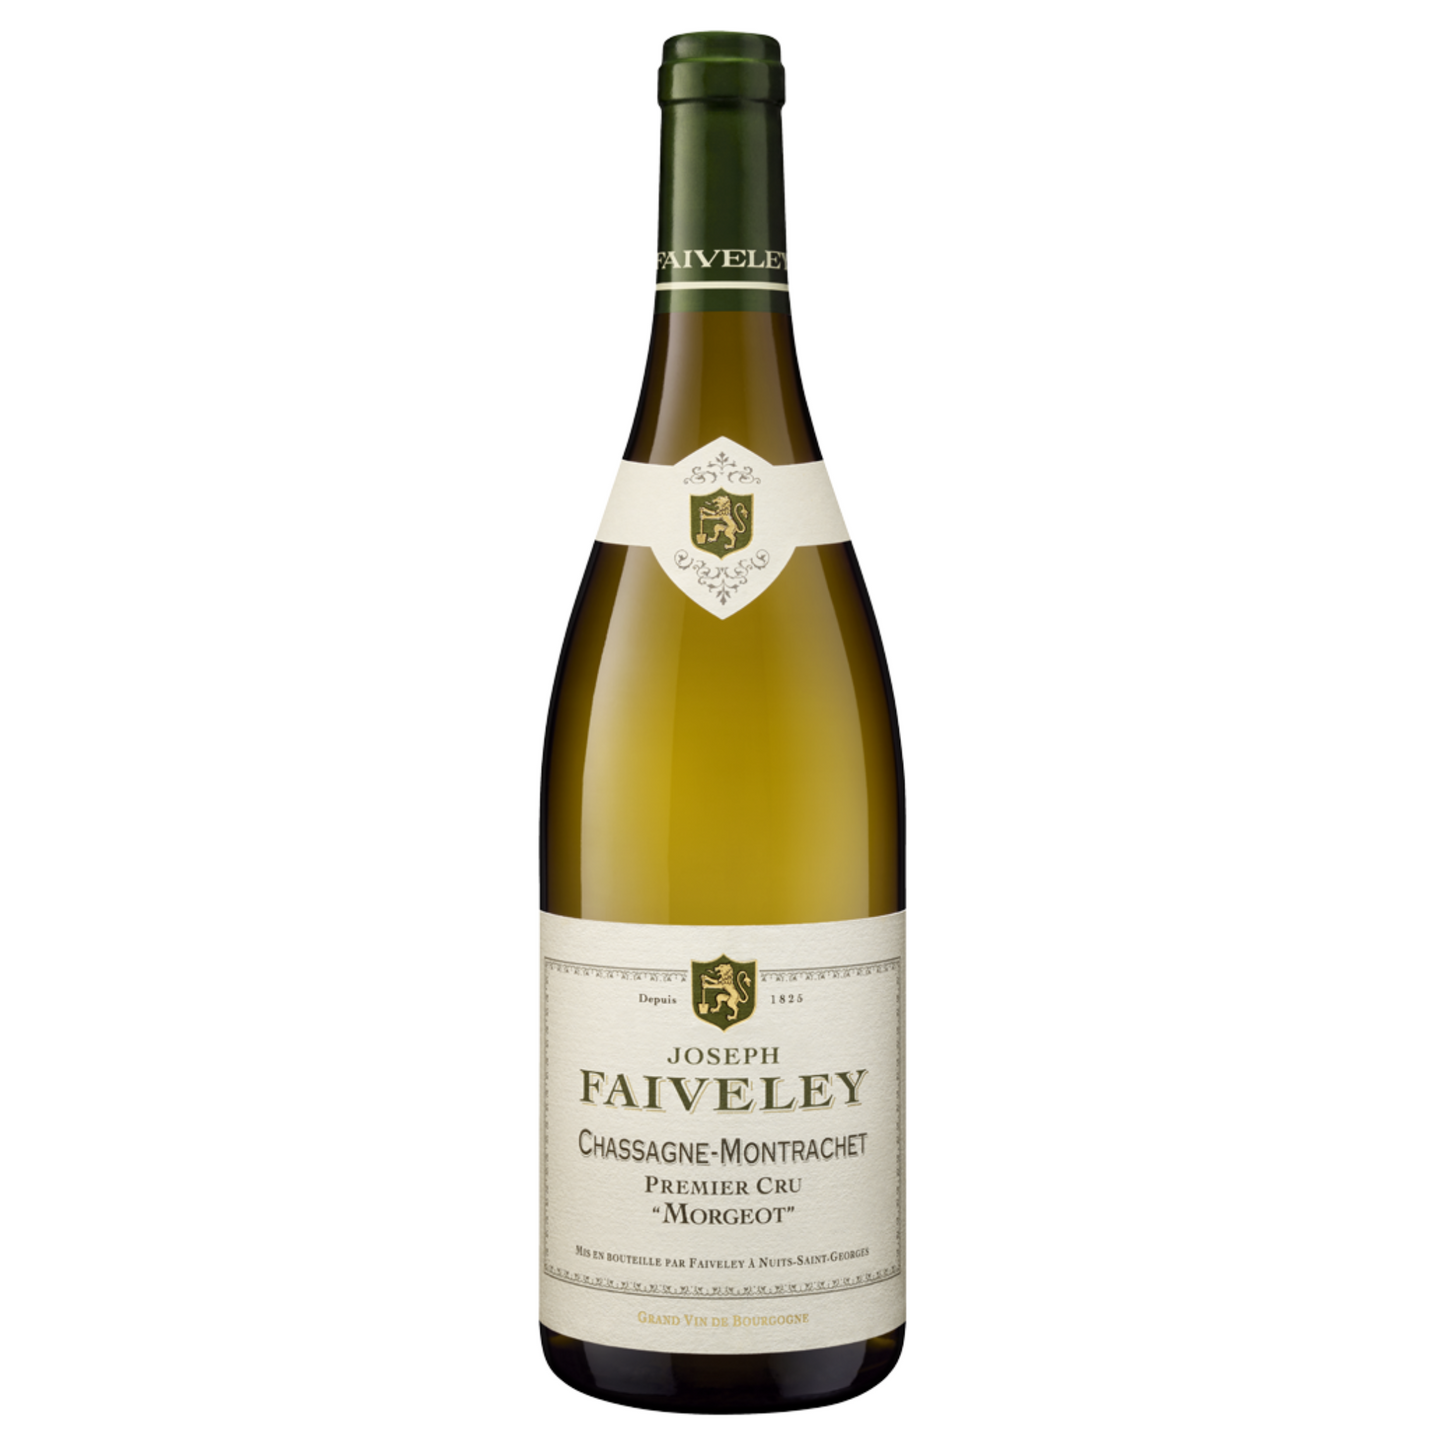 Faiveley Chassagne Montrachet 1er Cru "Morgeot" - Grand Vin Pte Ltd